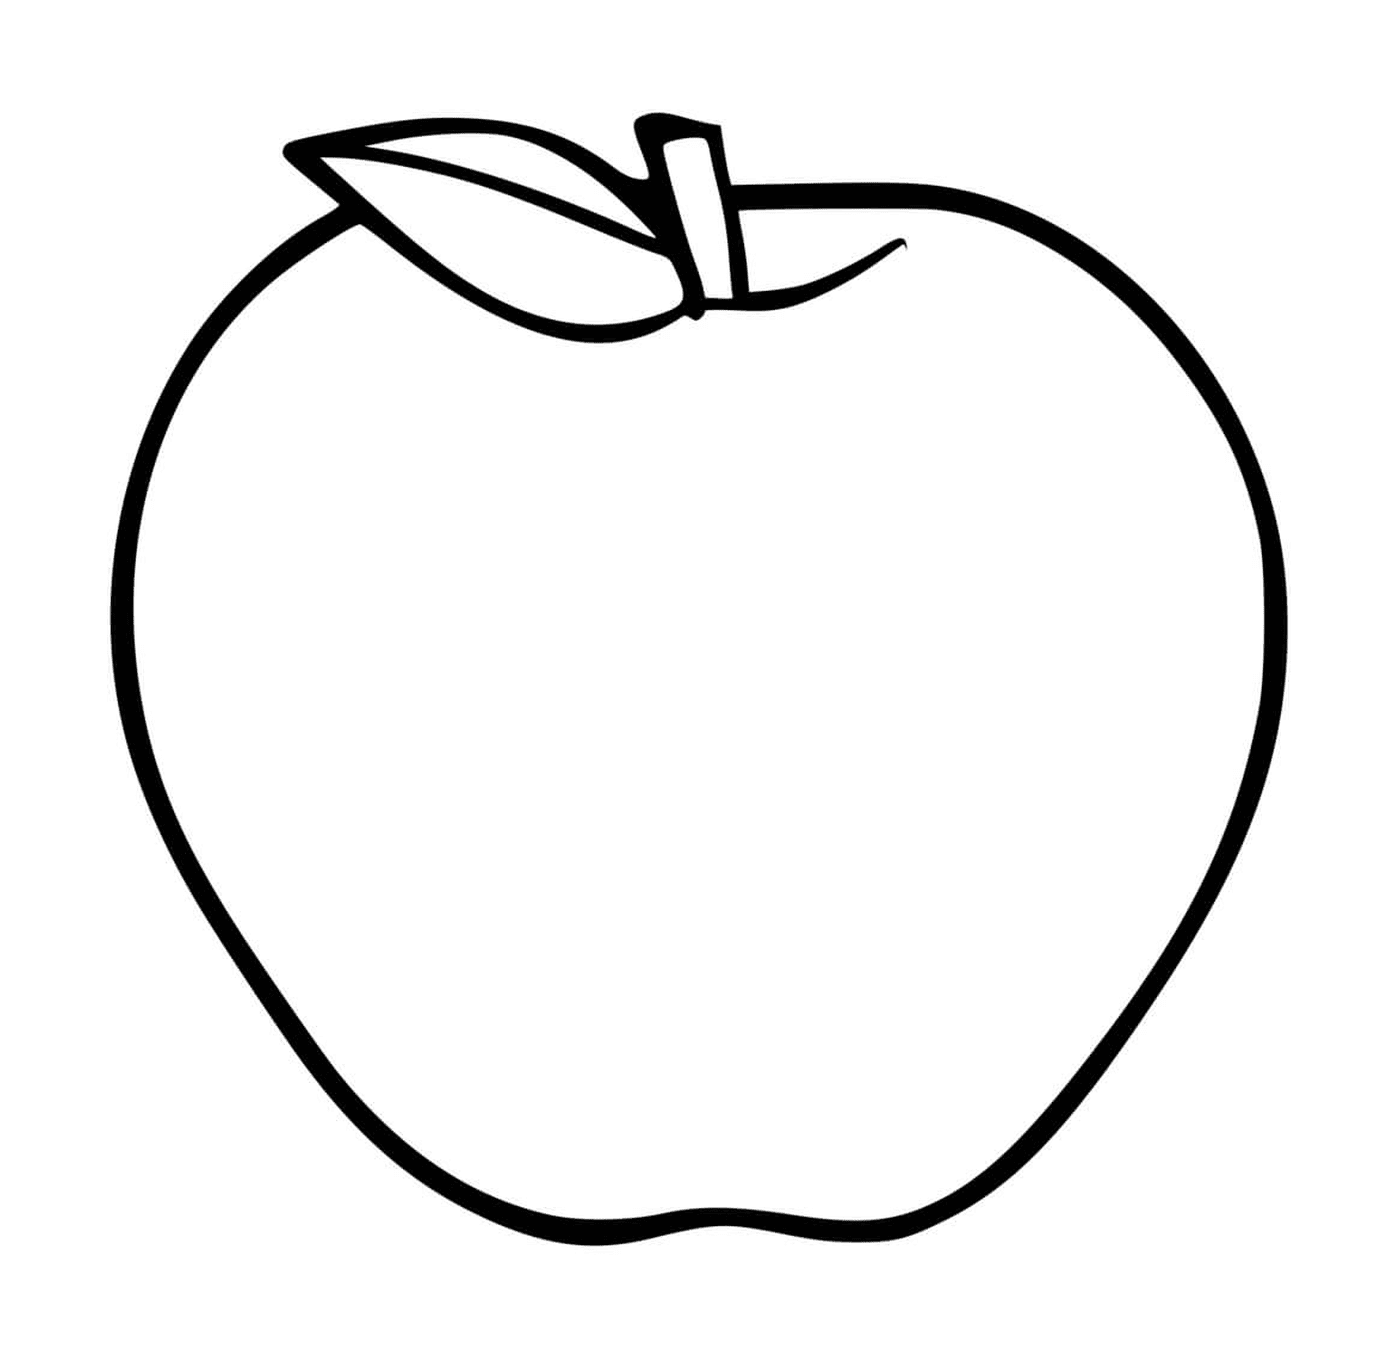  Maçã produzida por uma macieira 